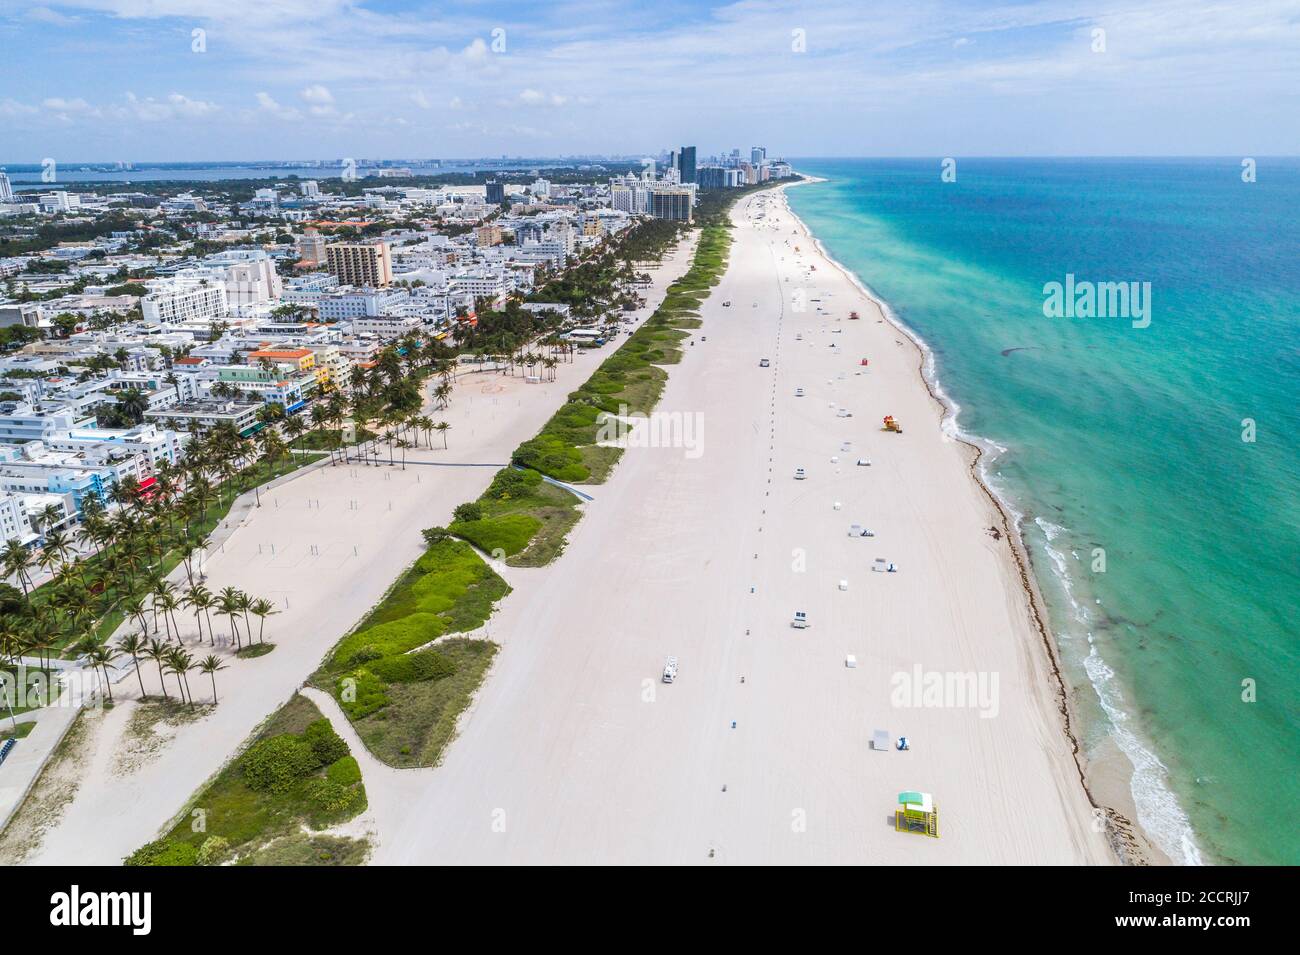 Miami Beach Florida, South Beach, Atlantic Ocean Water, Lummus Park, vacant deserte vuoto chiuso spiagge pubbliche spiagge, Covid-19 coronavirus pandemic illne Foto Stock